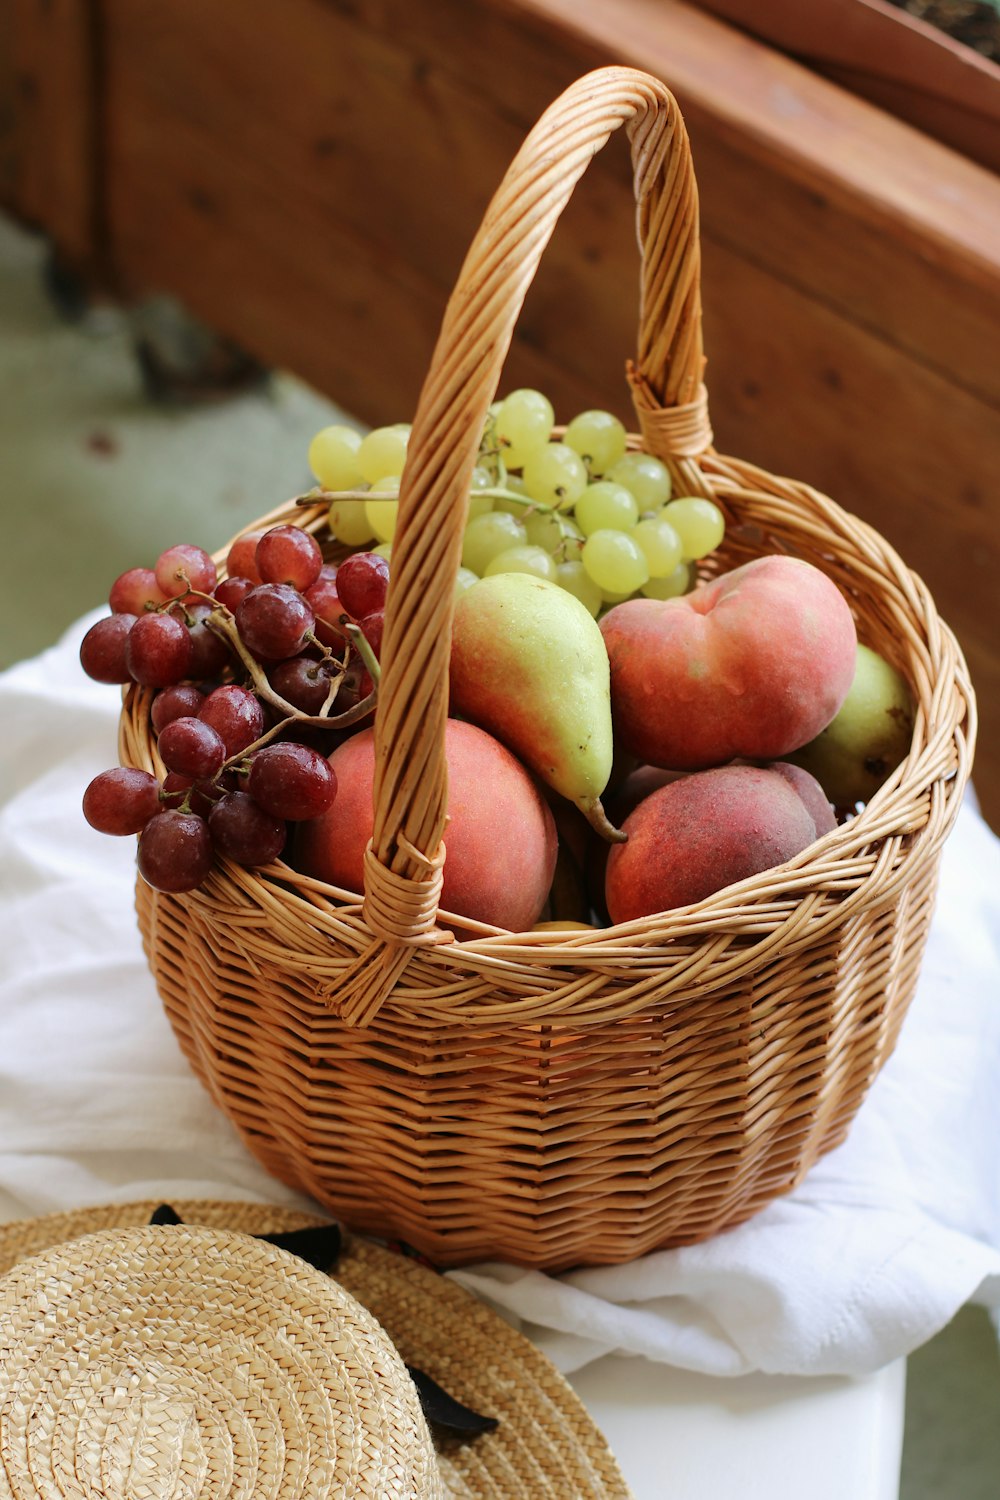 999+ Fruit Basket Pictures | Download Free Images on Unsplash